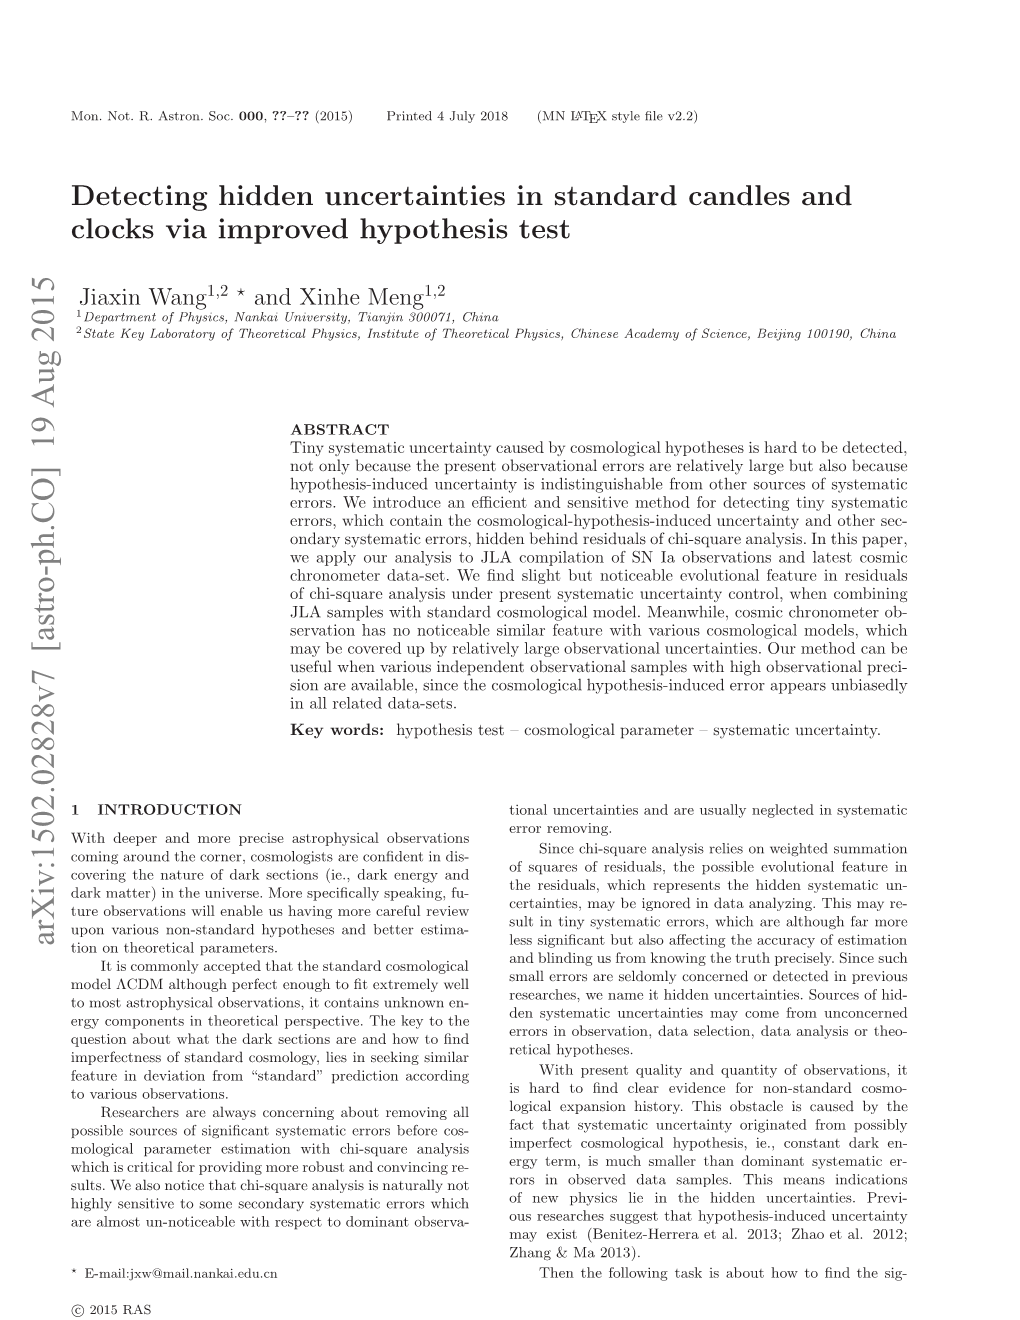 Detecting Hidden Uncertainties in Standard Candles and Clocks